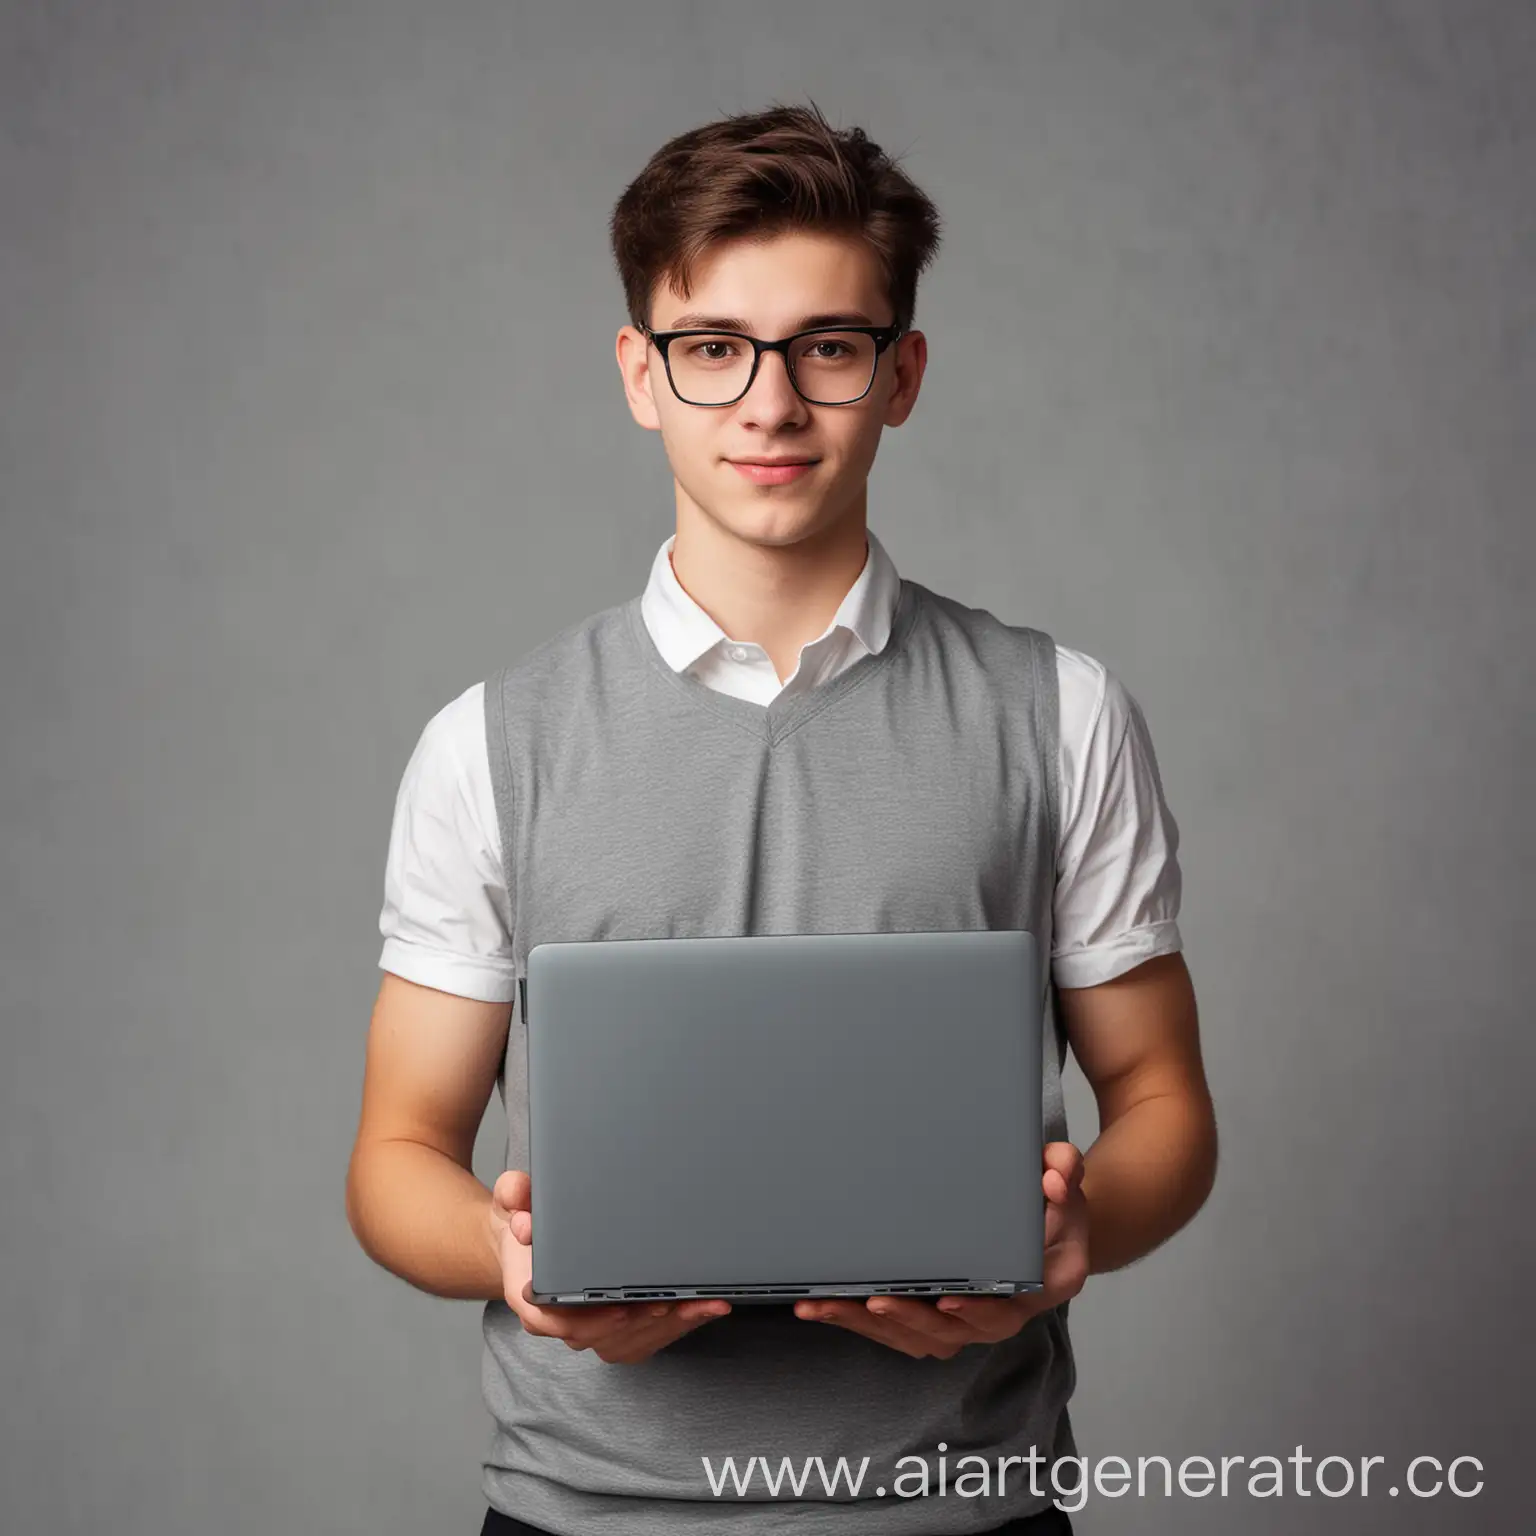 студент 20 лет стоит с ноутбуком в руках